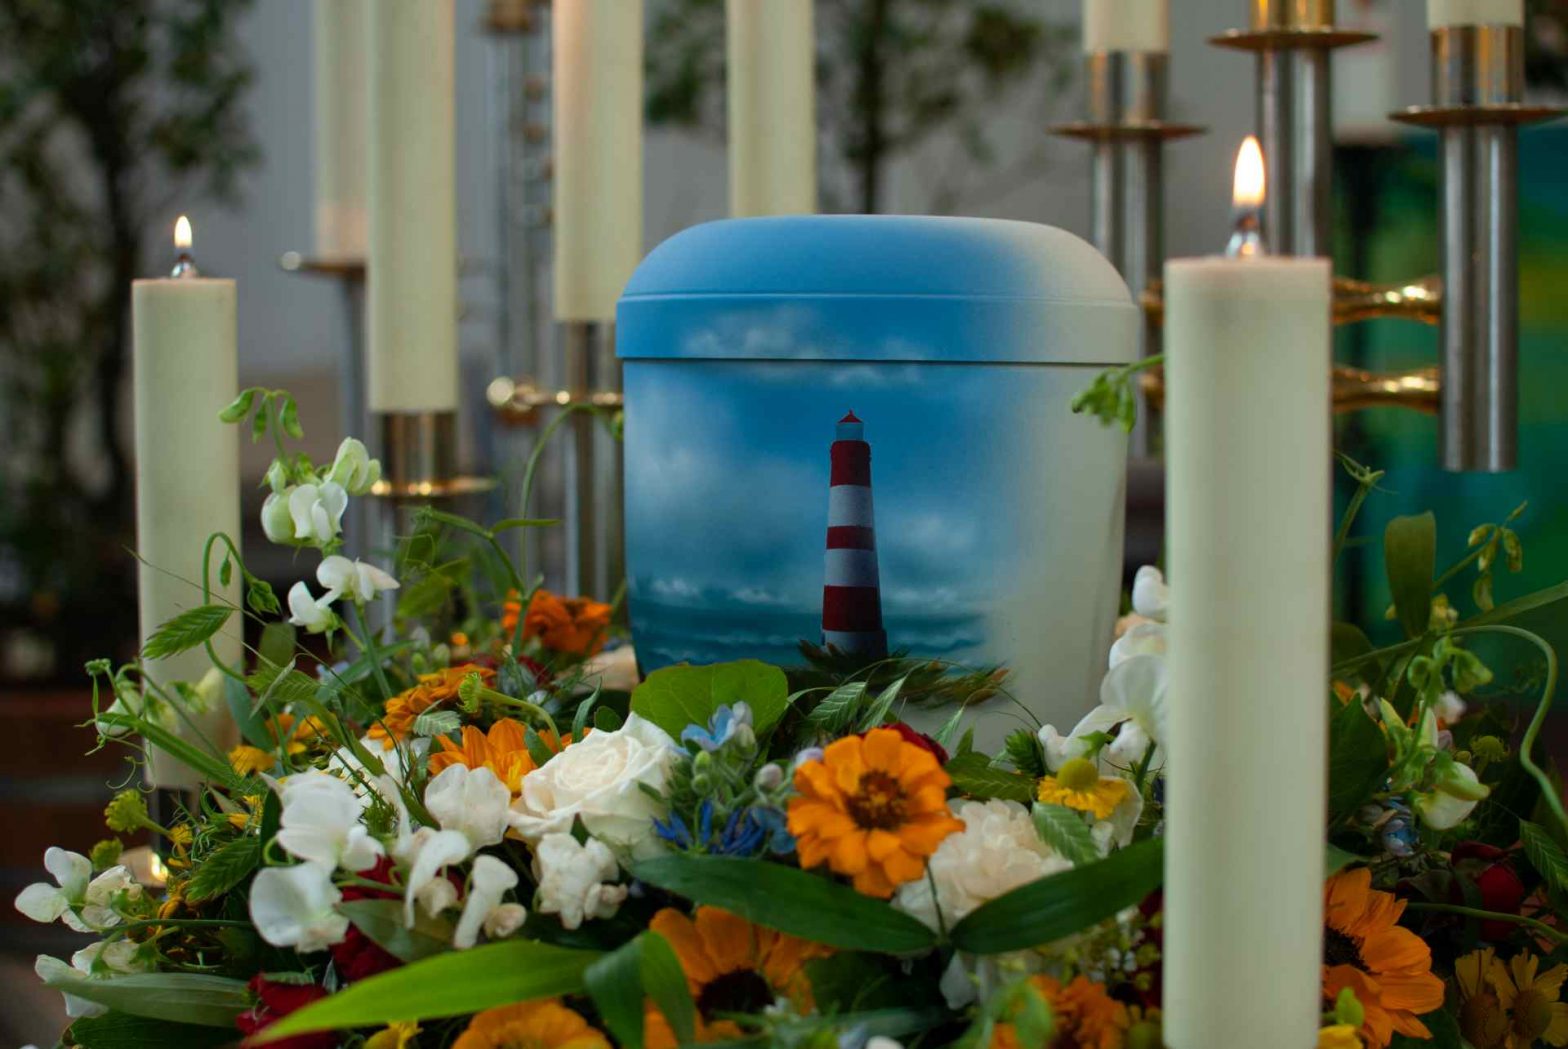 Urne mit Leuchtturmmotiv inmitten von bunten Blumen und Kerzen